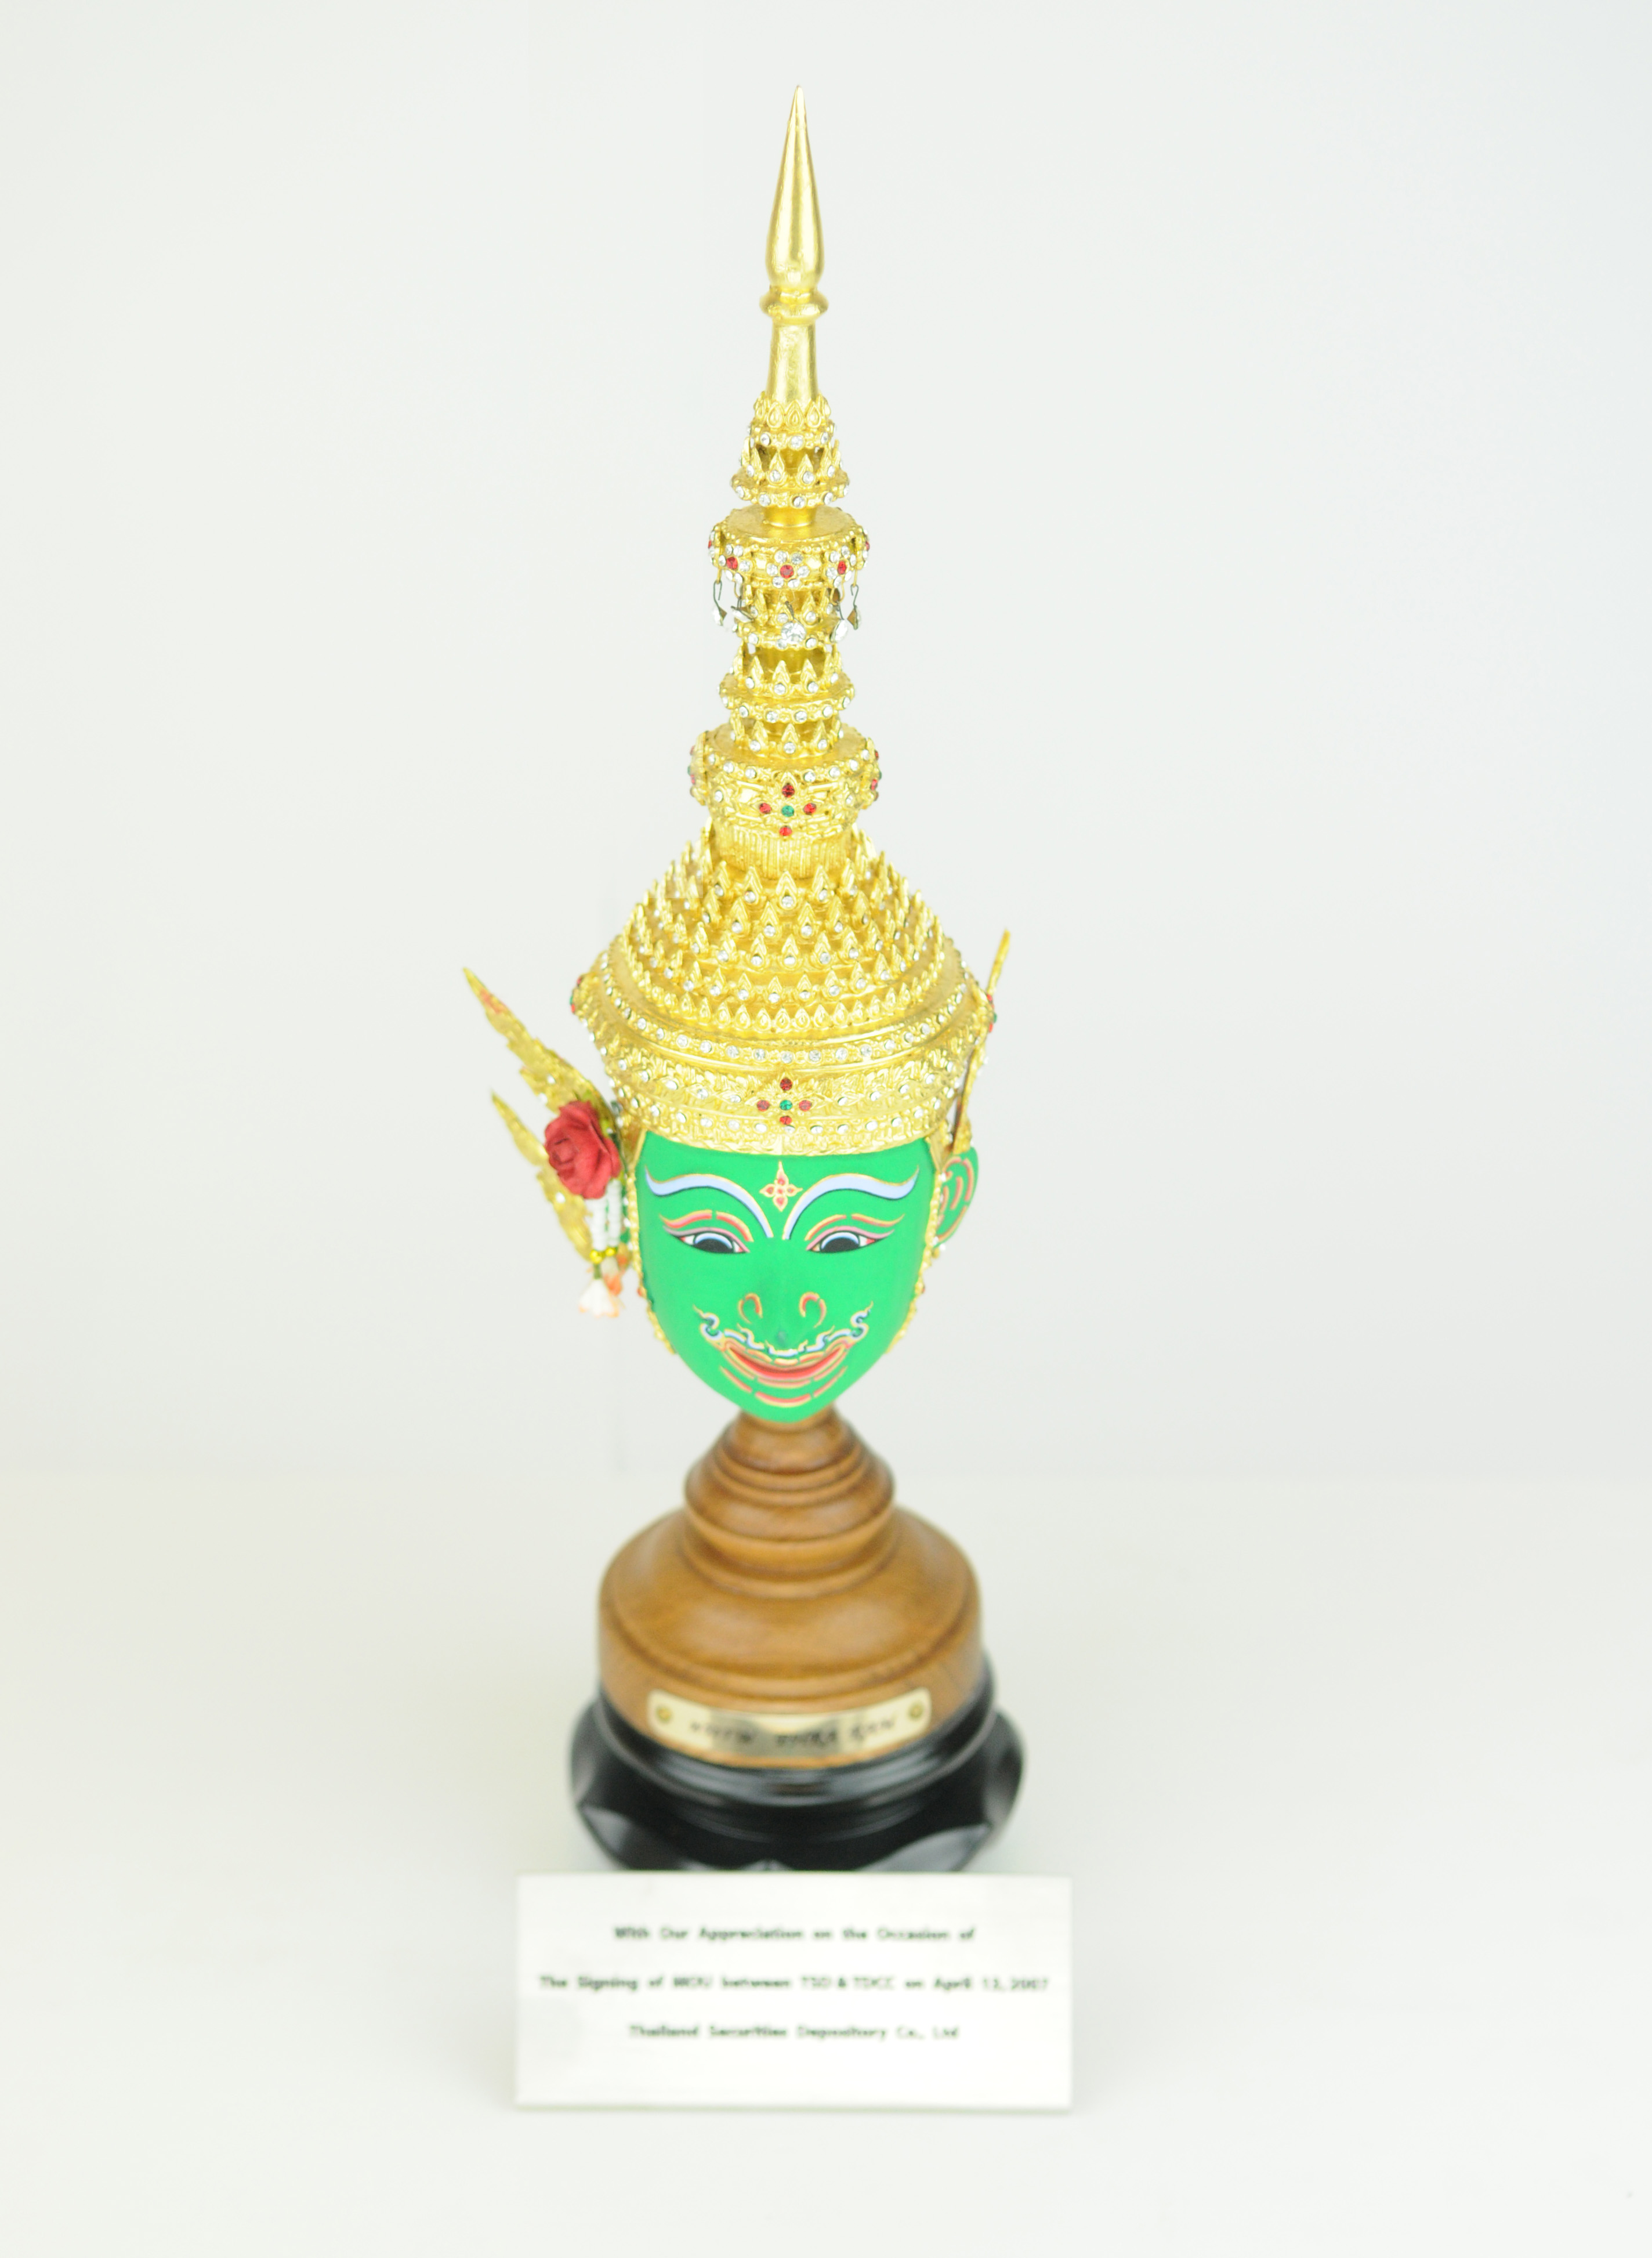 泰國集保結算所致贈簽署MOU紀念品